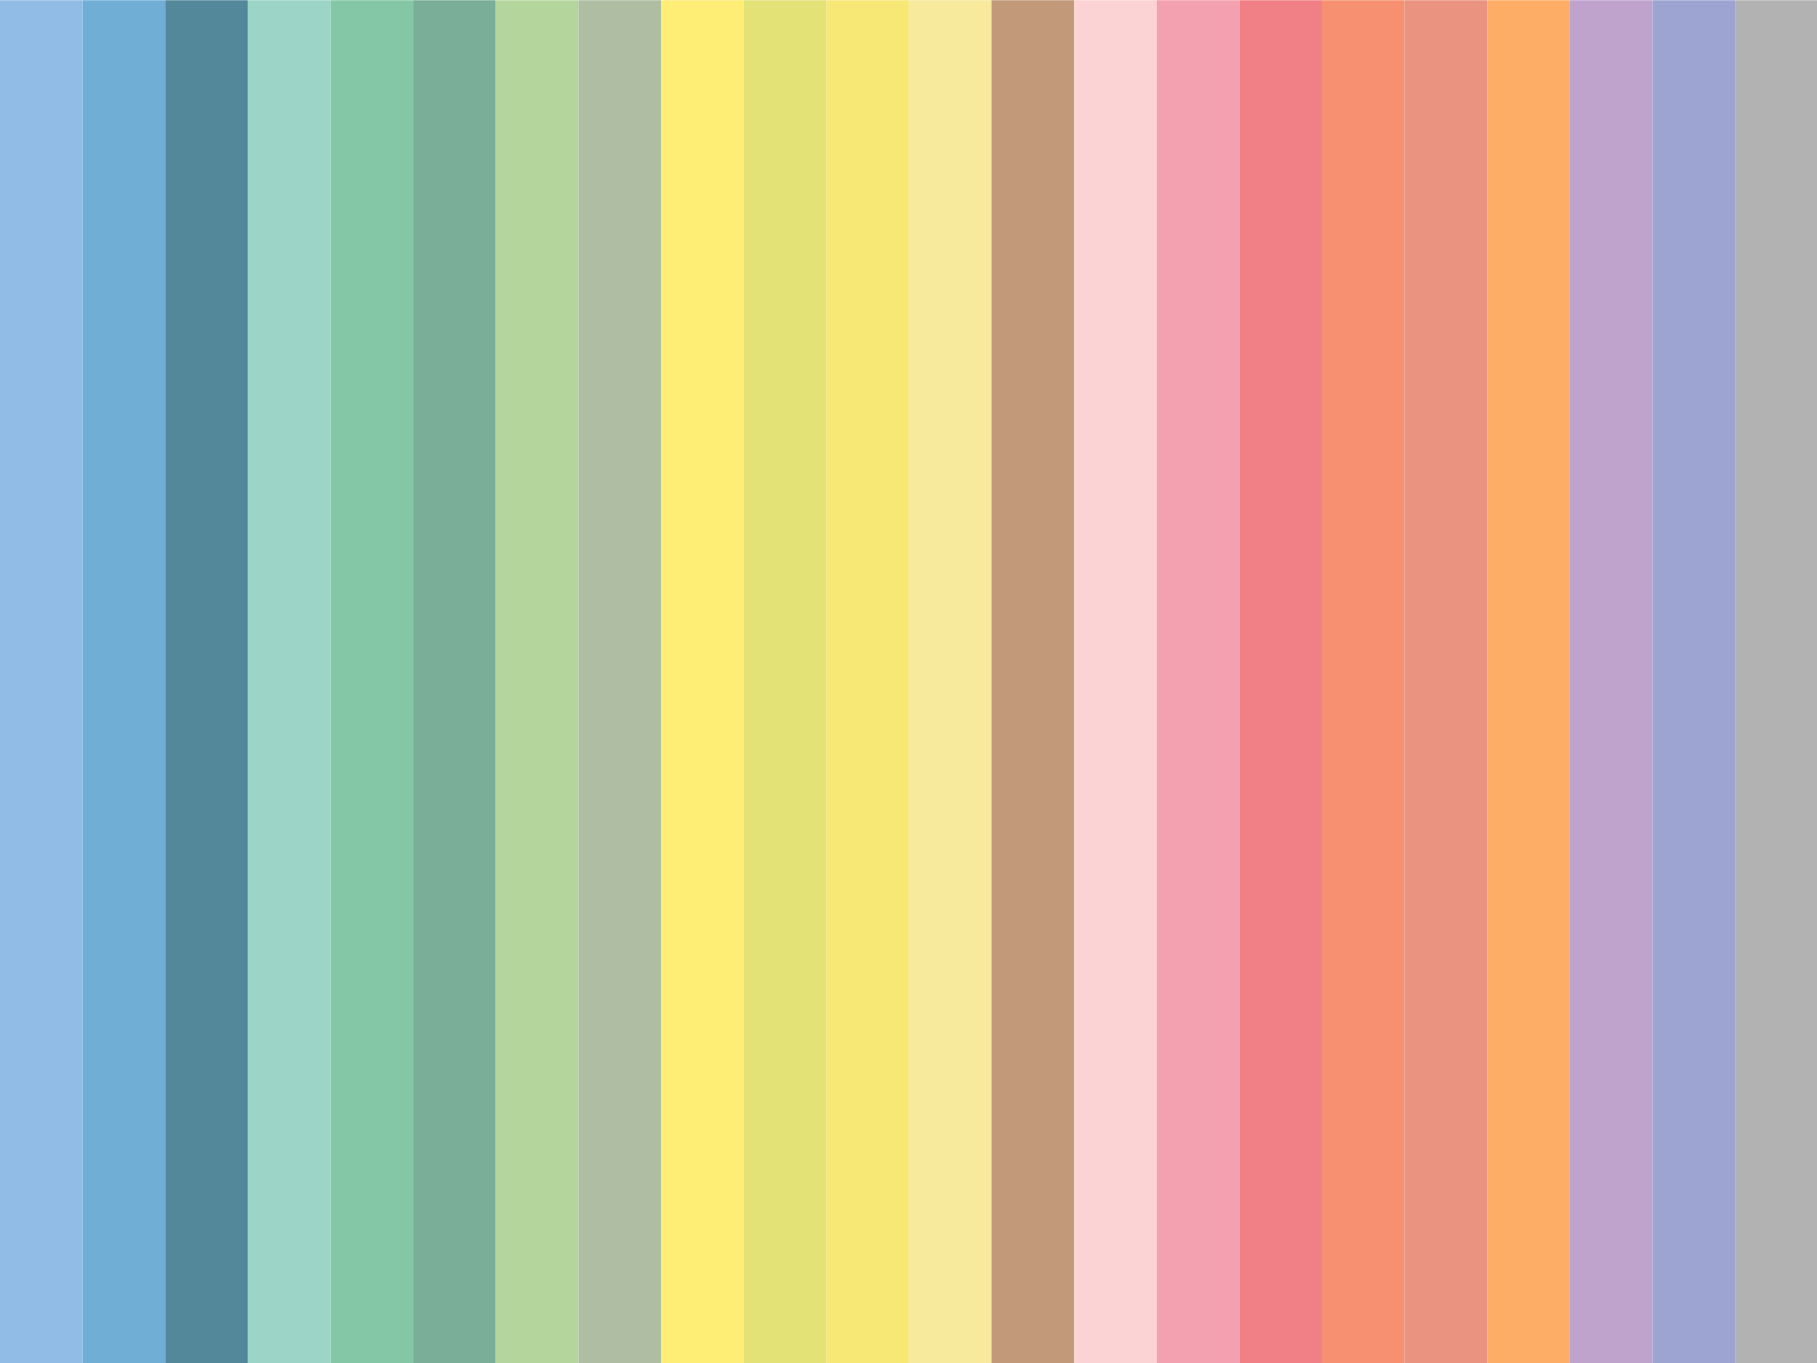 pastel colors